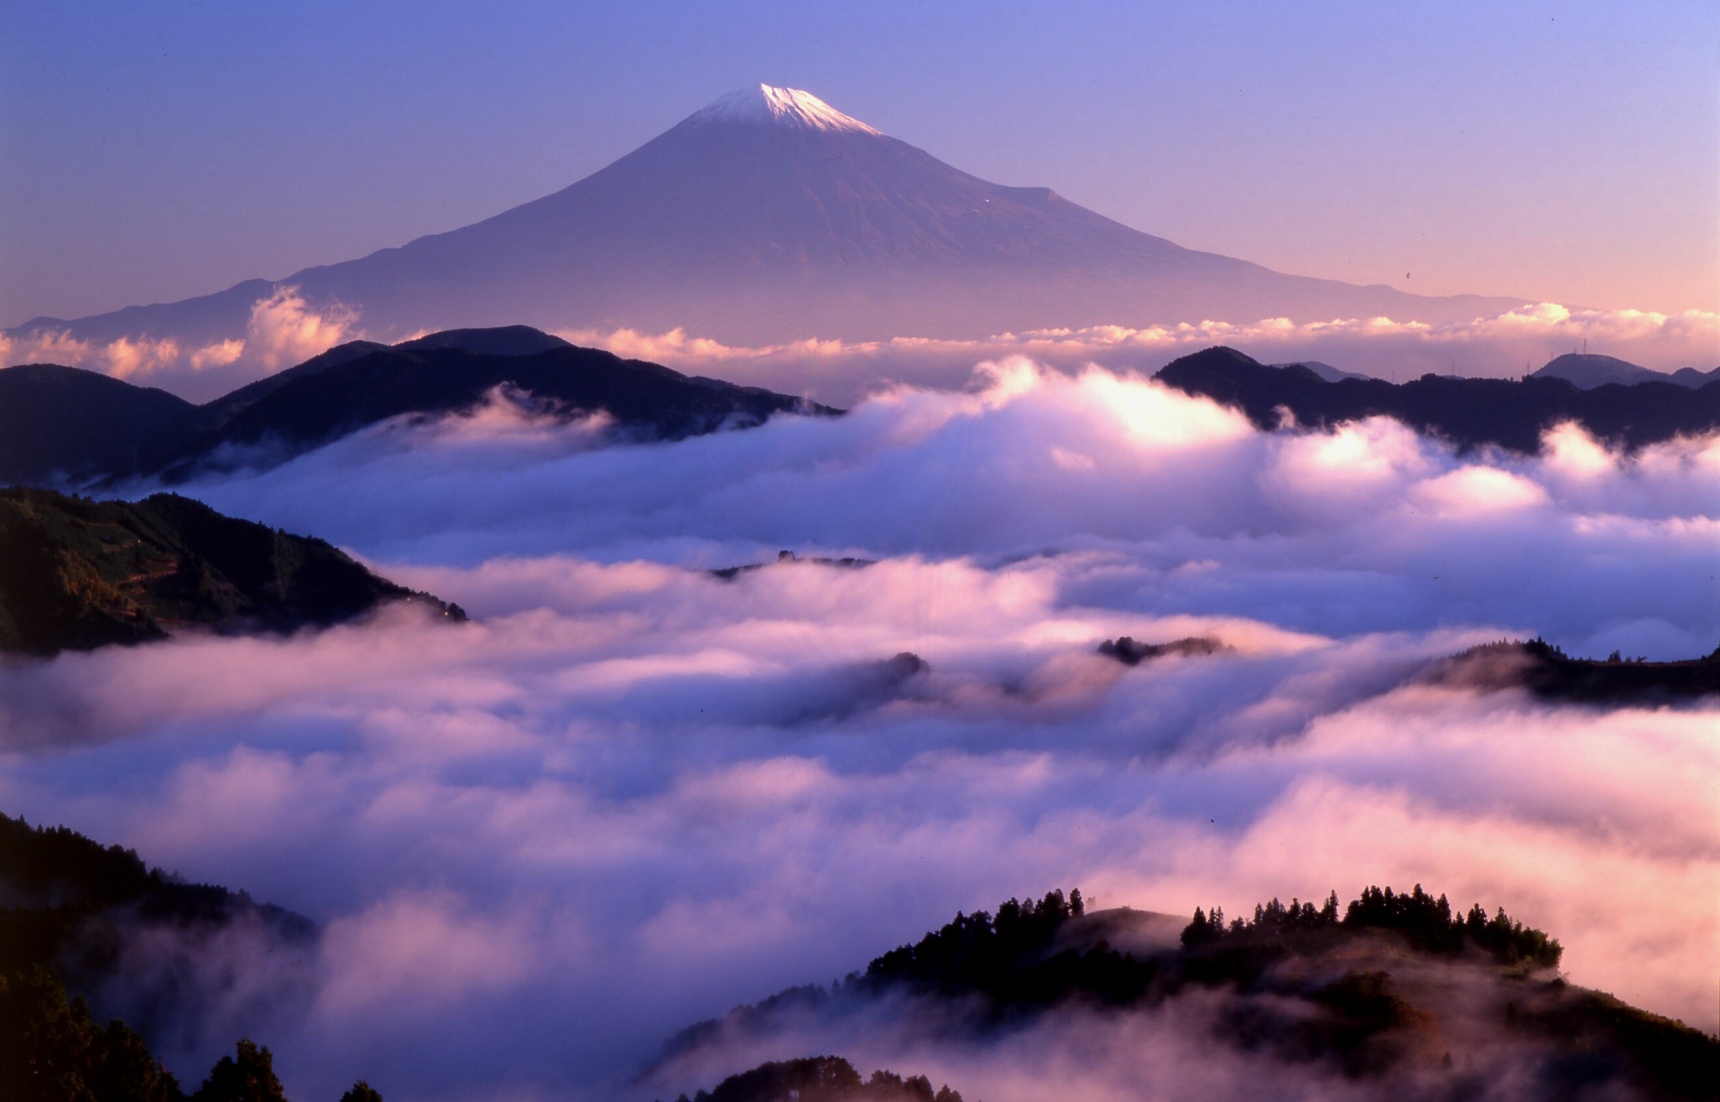 一生中一定要征服的高山 — 富士山登山指南珍藏版